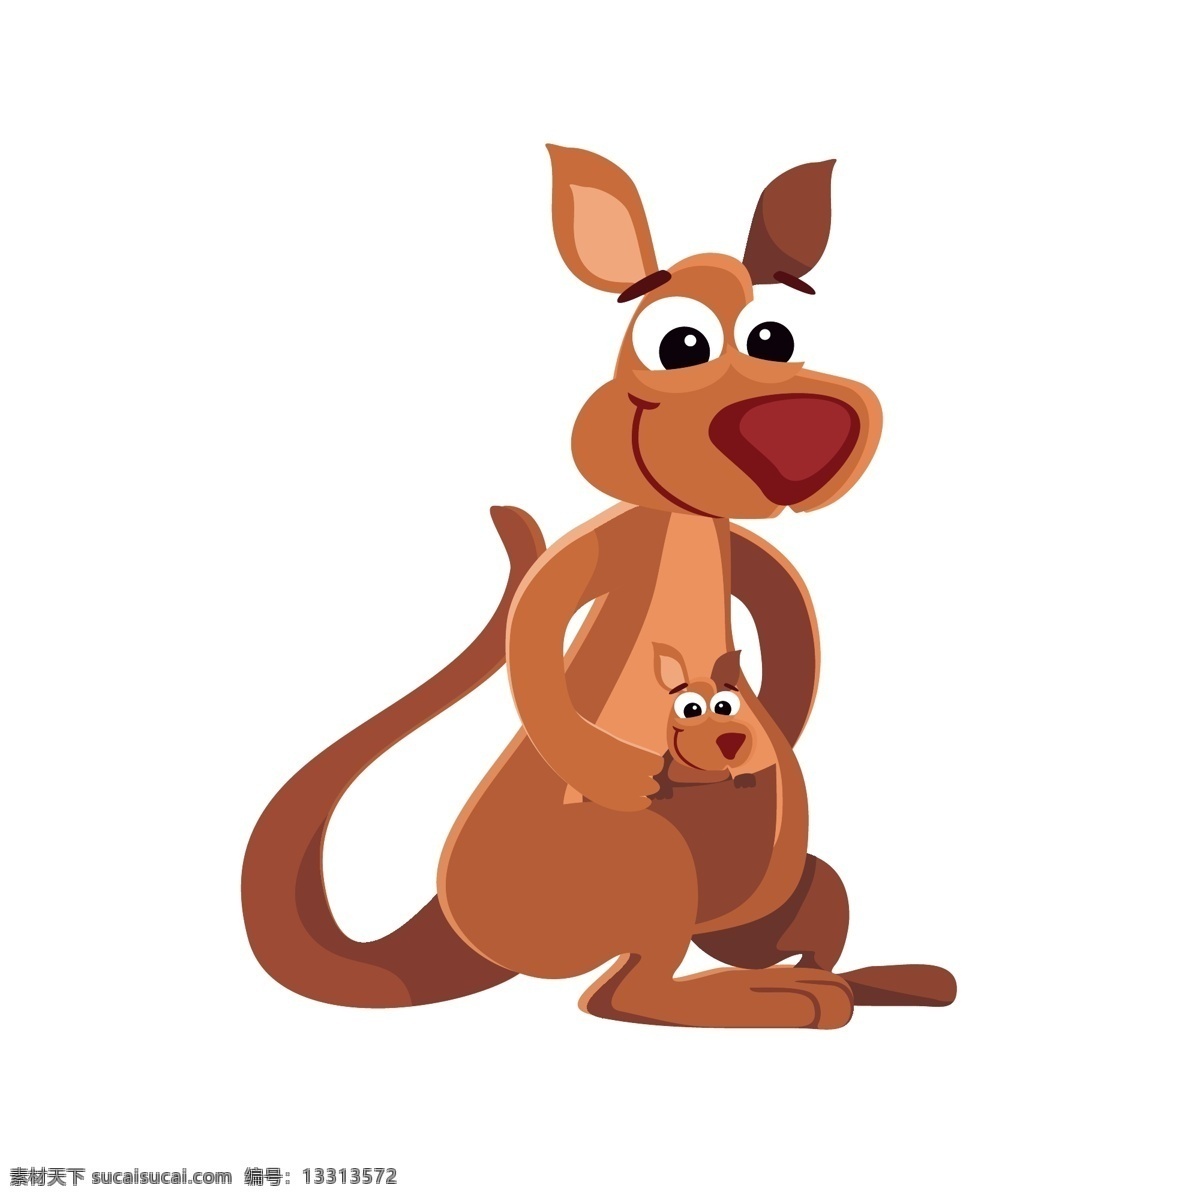 袋鼠 卡通动物 手绘 卡通 可爱 动物 插画 背景 矢量素材 矢量 卡通可爱动物